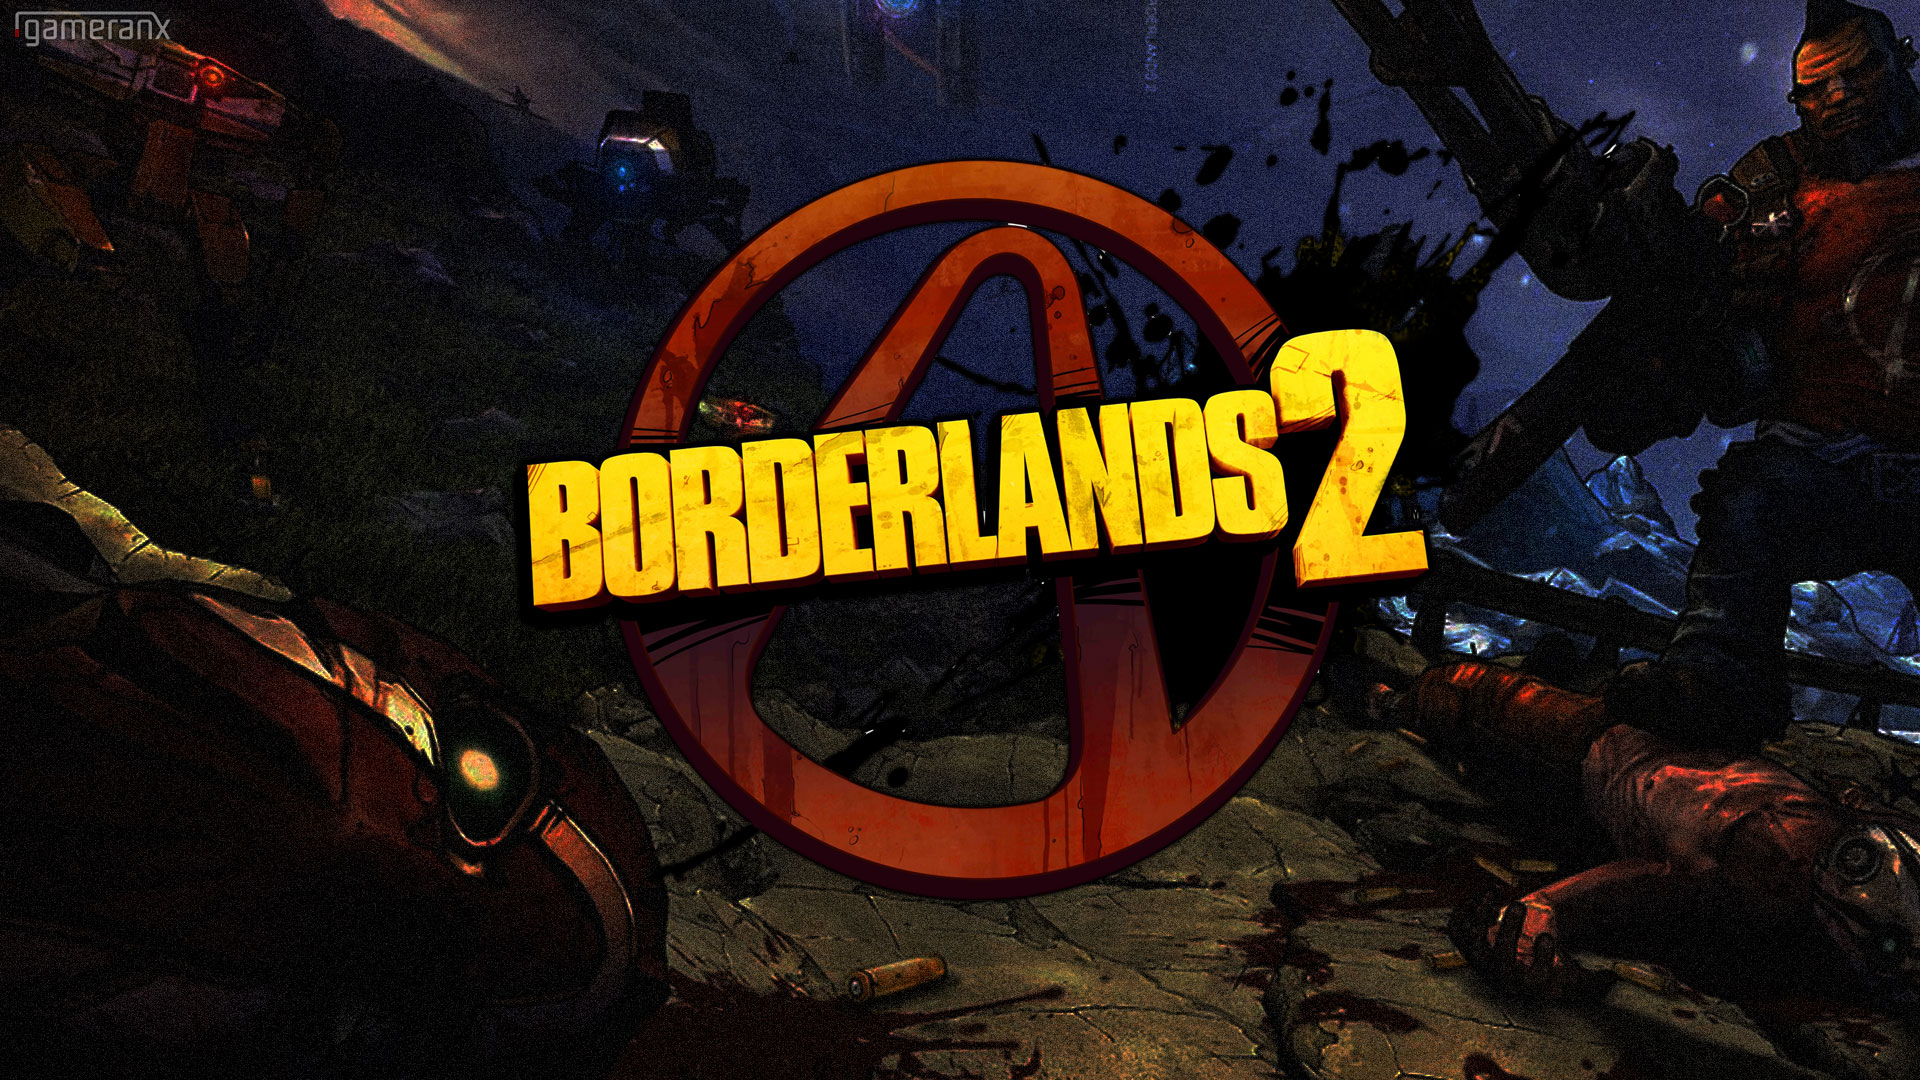 Free download wallpaper Borderlands 2, Borderlands, Video Game on your PC desktop